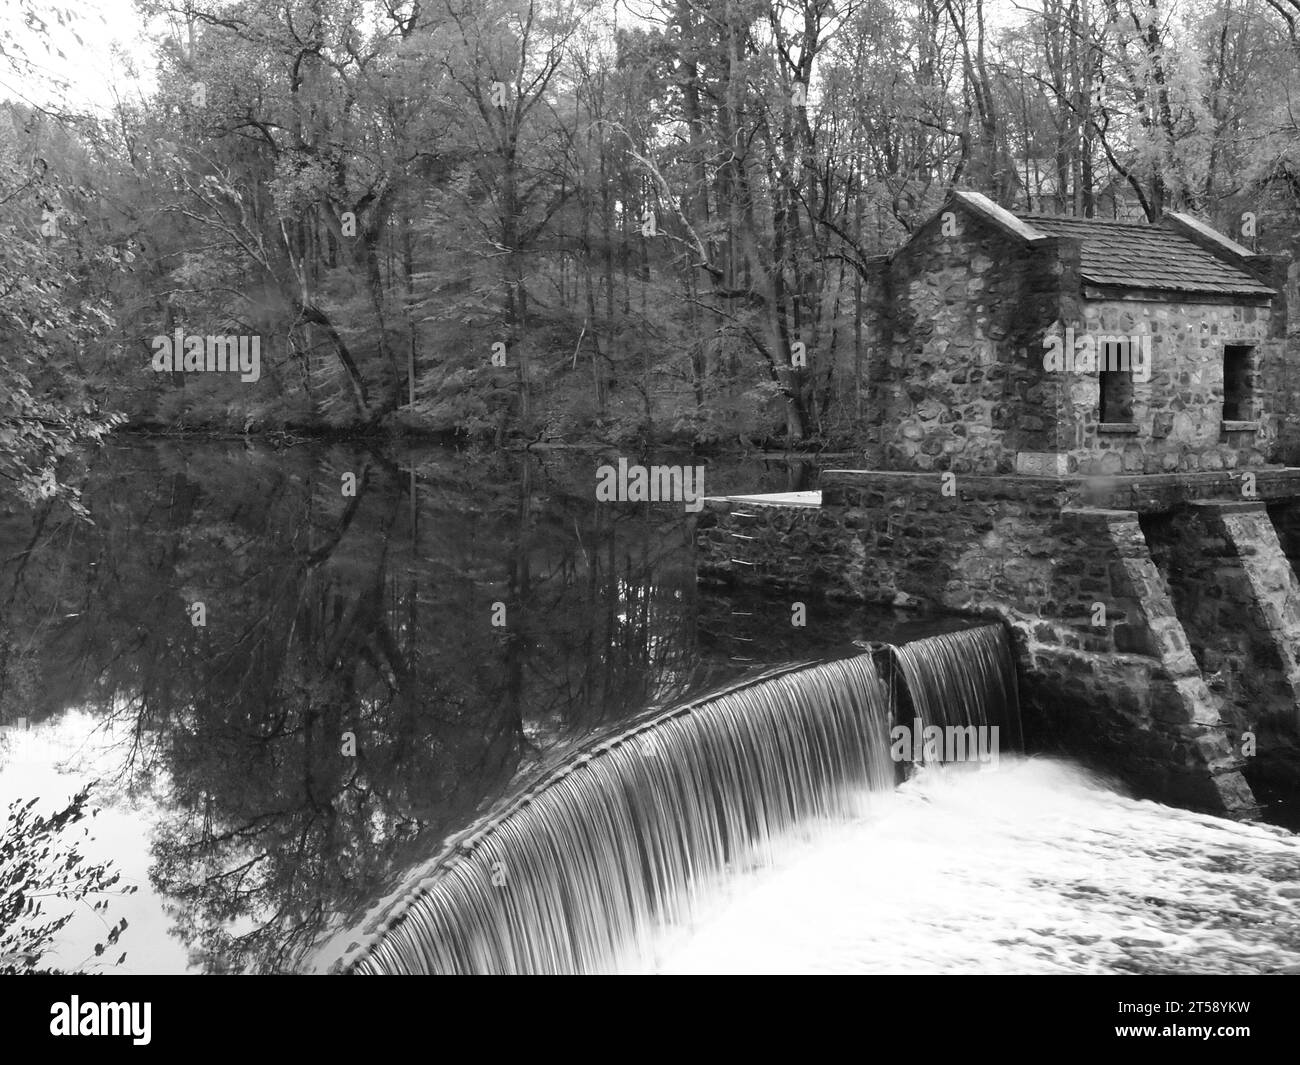 Speedwell Lake e Dam Morristown, New Jersey, in autunno. L'area fa parte di un sito storico dei primi anni '1800 nella contea di Morris, New Jersey. Foto Stock